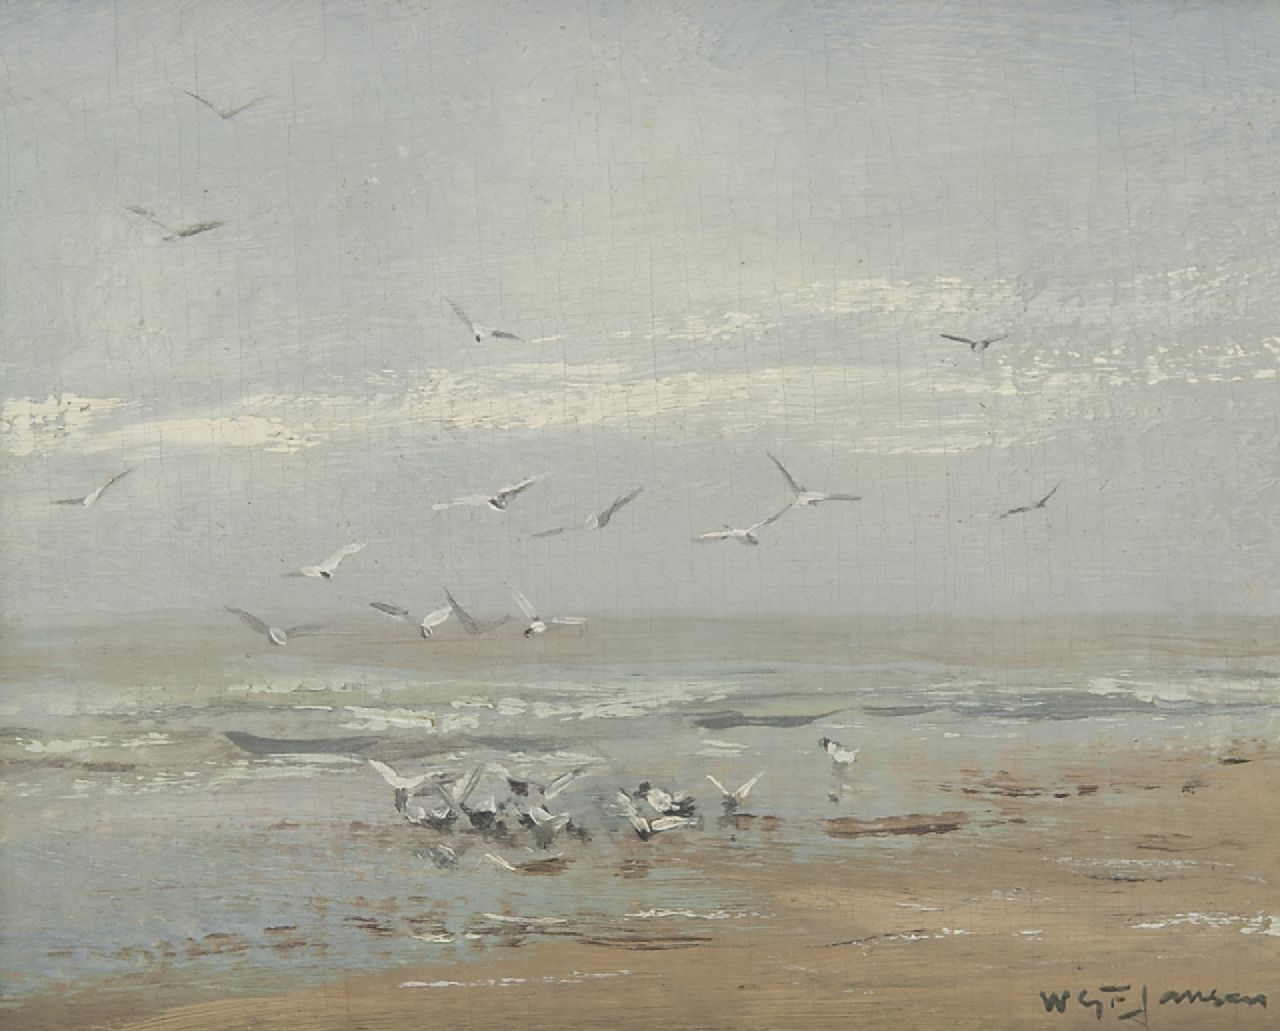 Jansen W.G.F.  | 'Willem' George Frederik Jansen, Möwen am Strand, Öl auf Leinwand 19,5 x 26,0 cm, Unterzeichnet r.u.